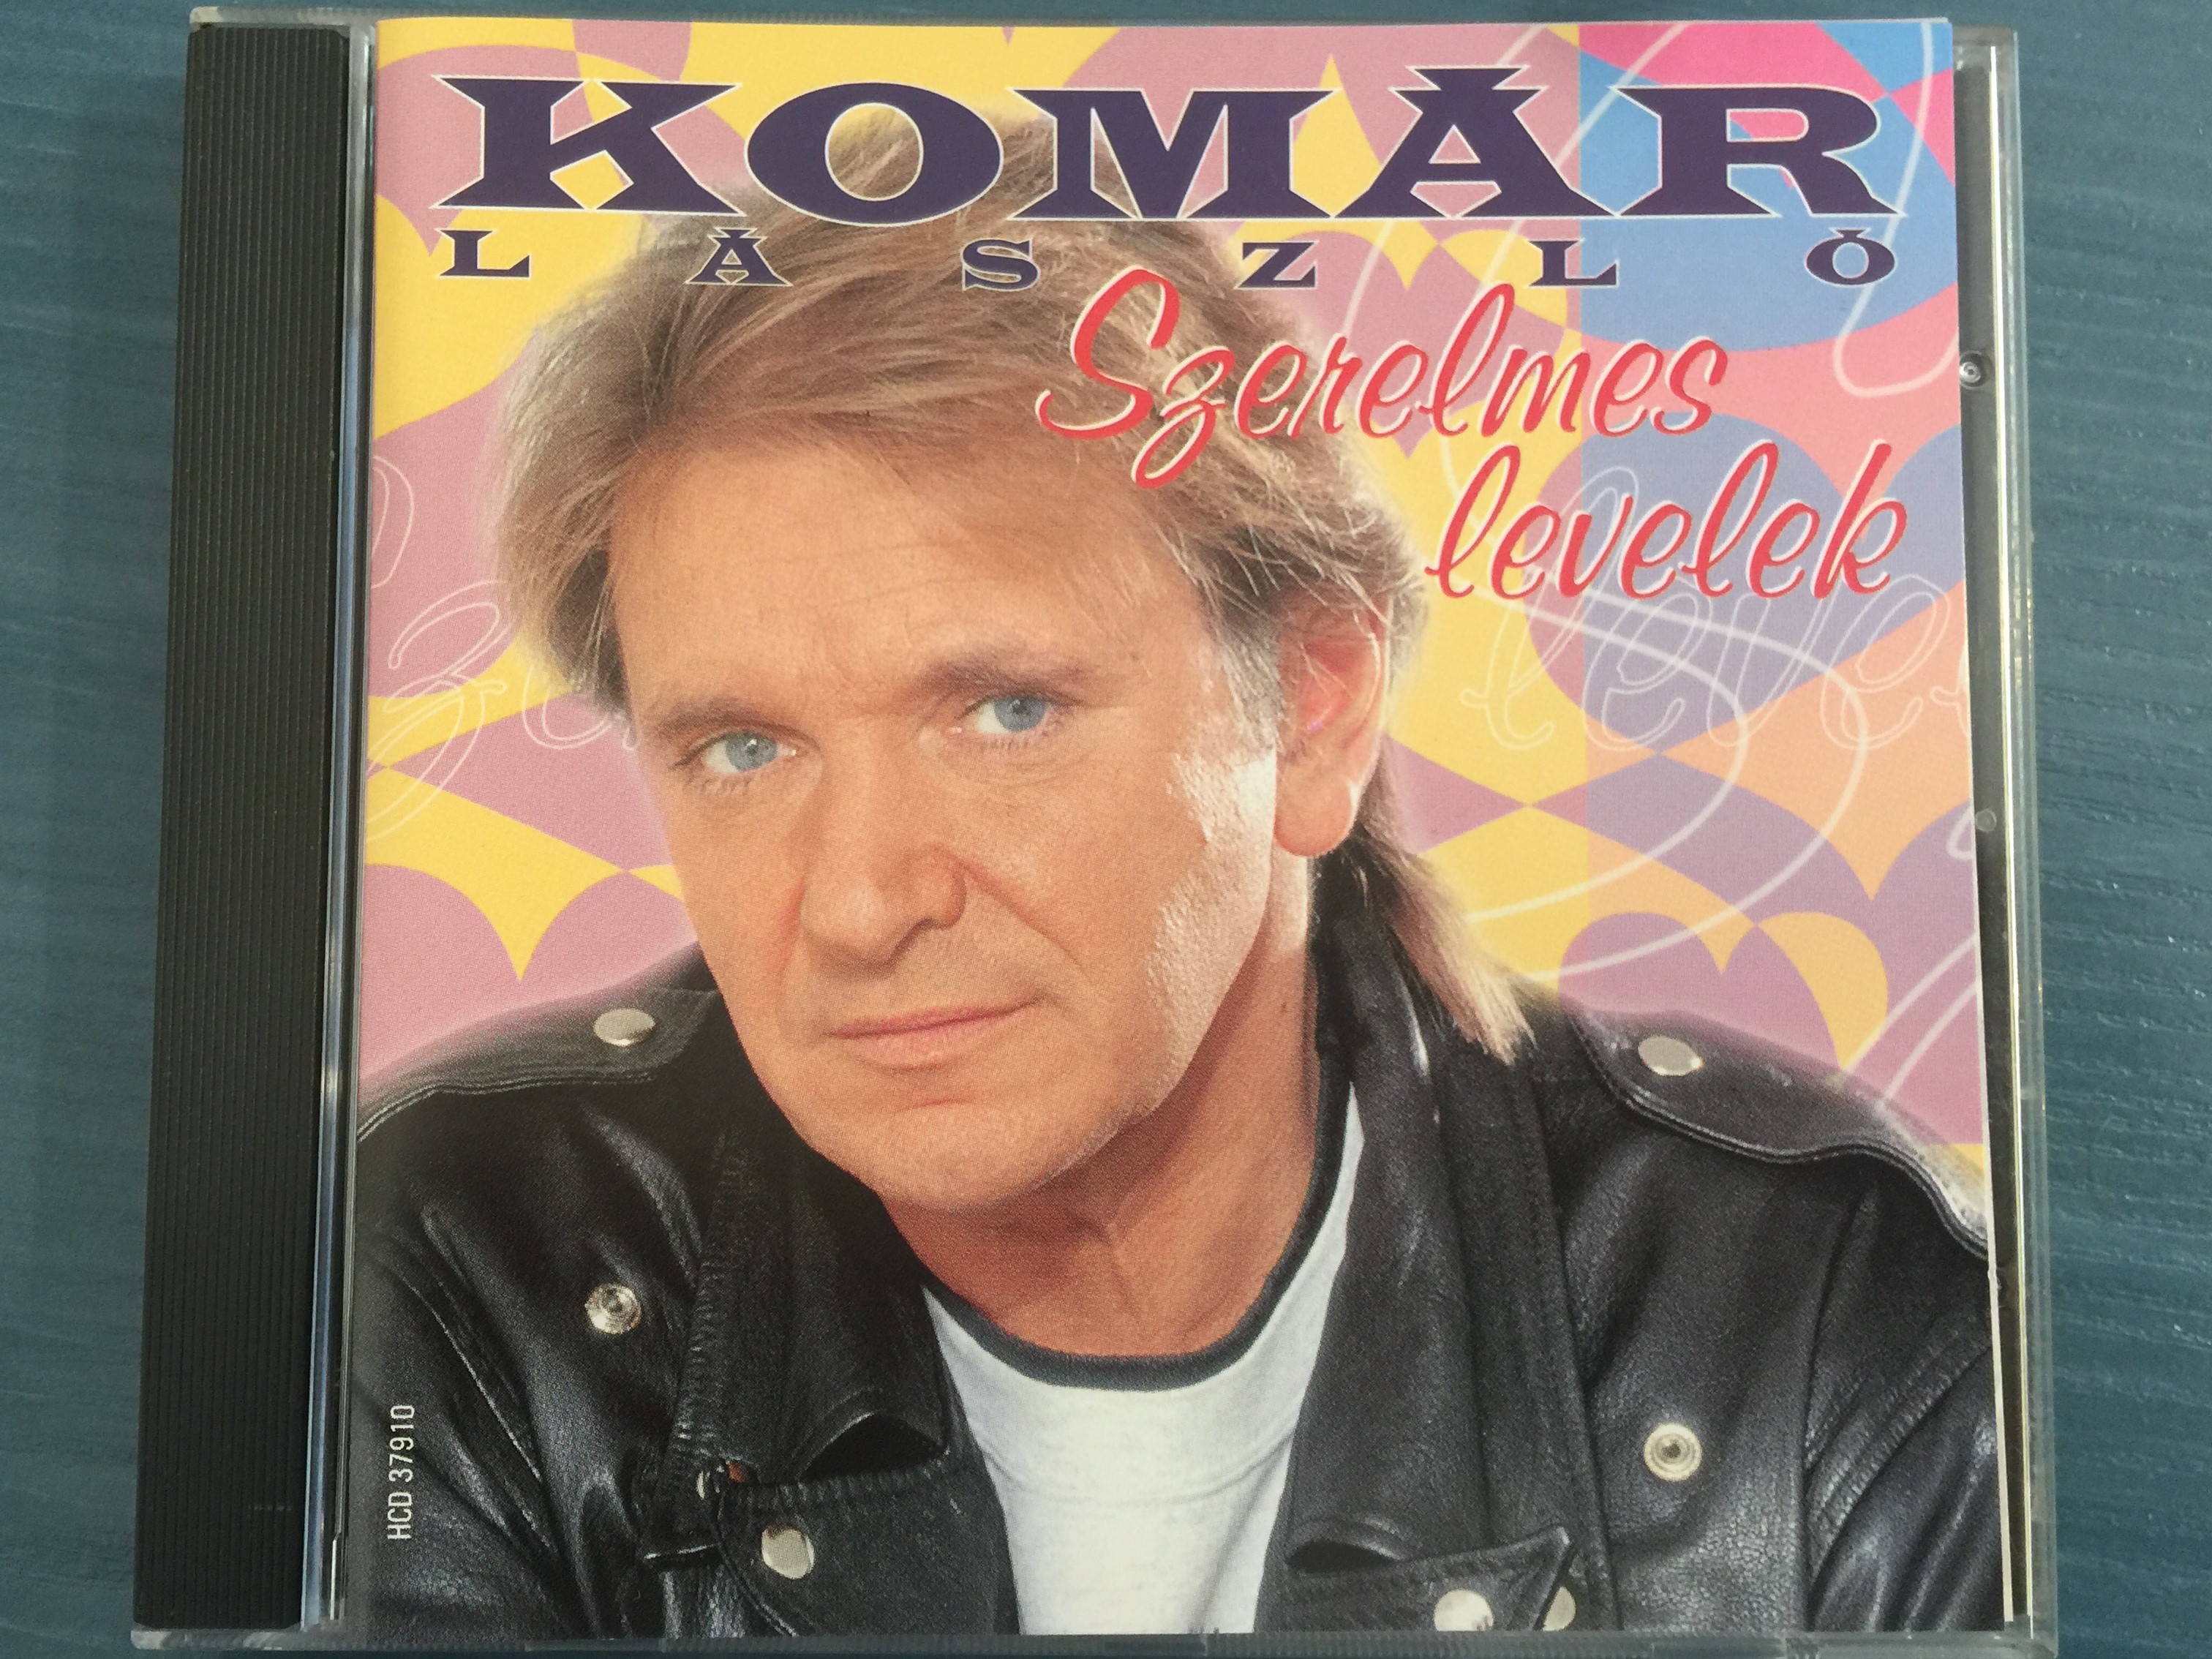 kom-r-l-szl-szerelmes-levelek-gong-audio-cd-1998-hcd-37910-1-.jpg